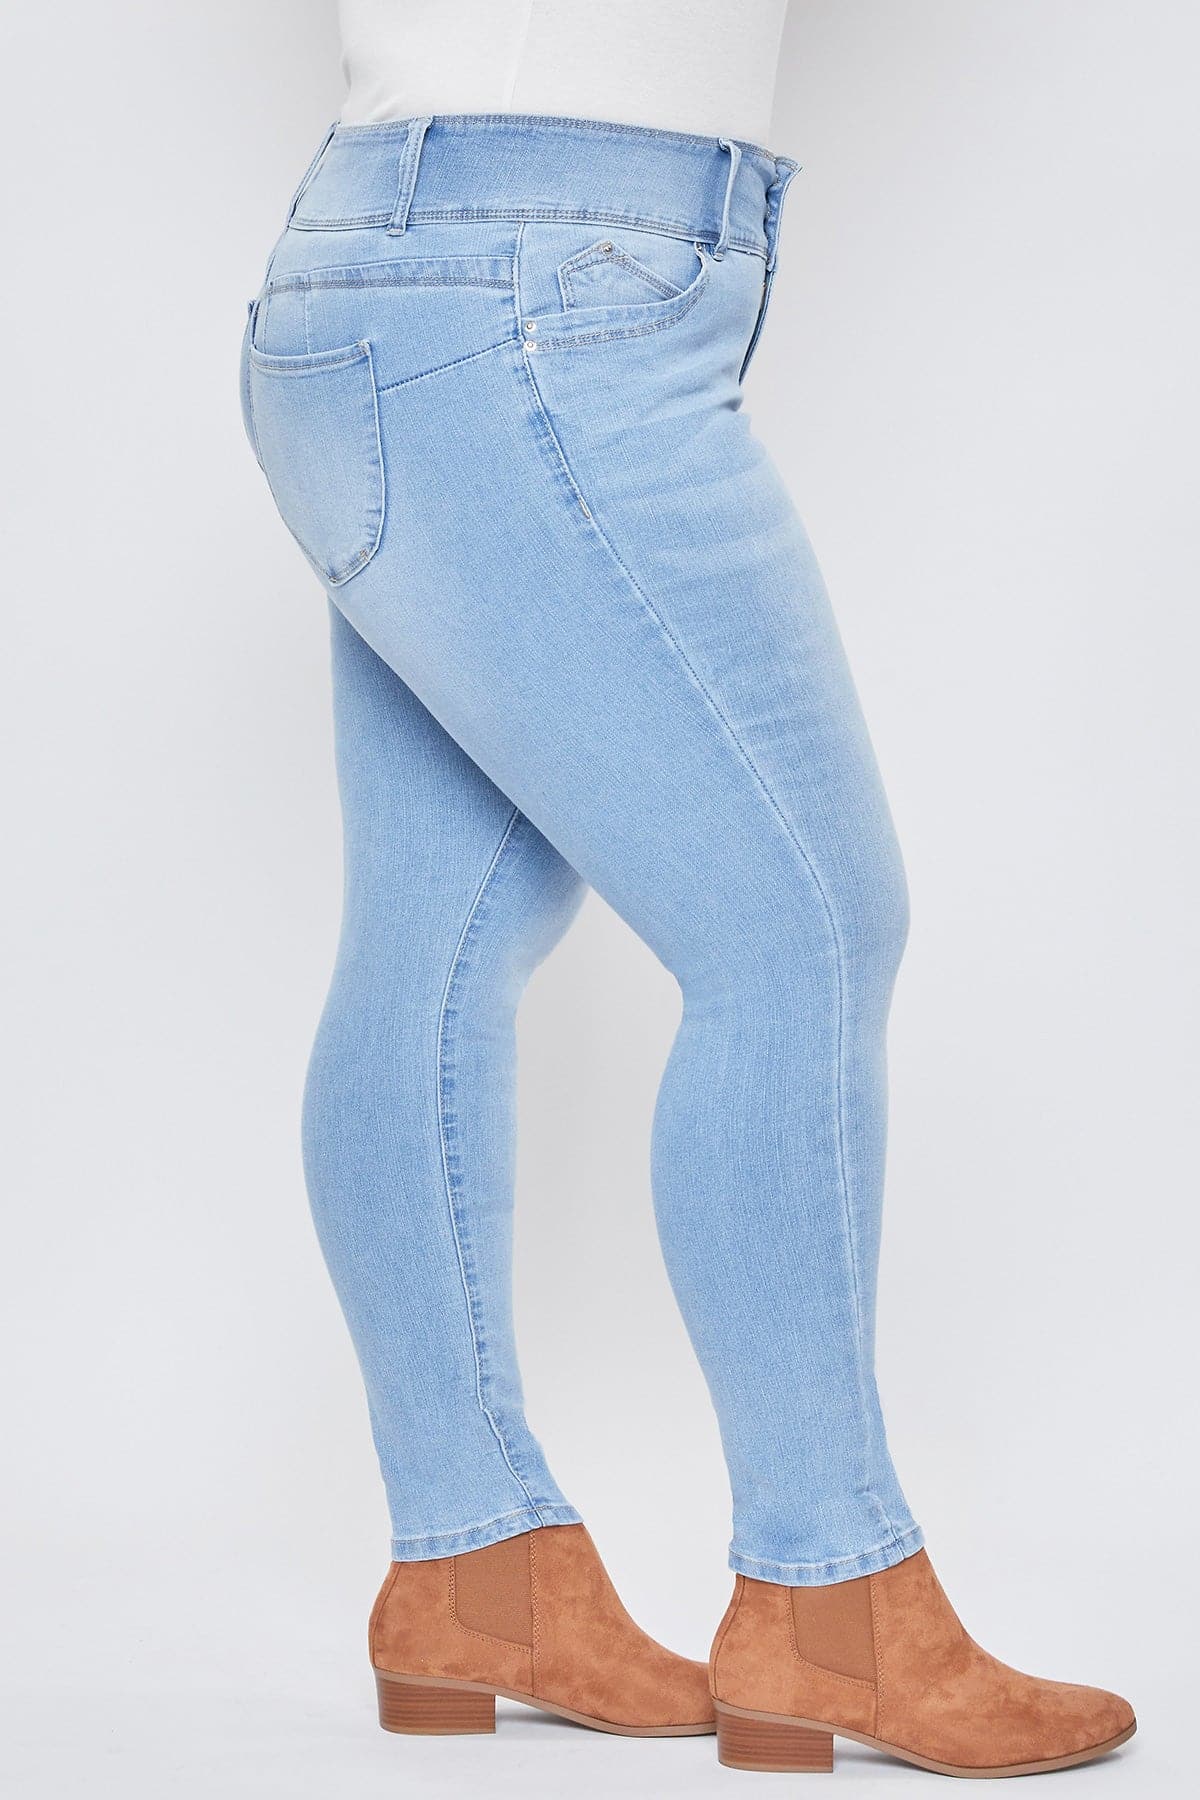 Women's Plus Size Sustainable WannaBettaButt Jeans